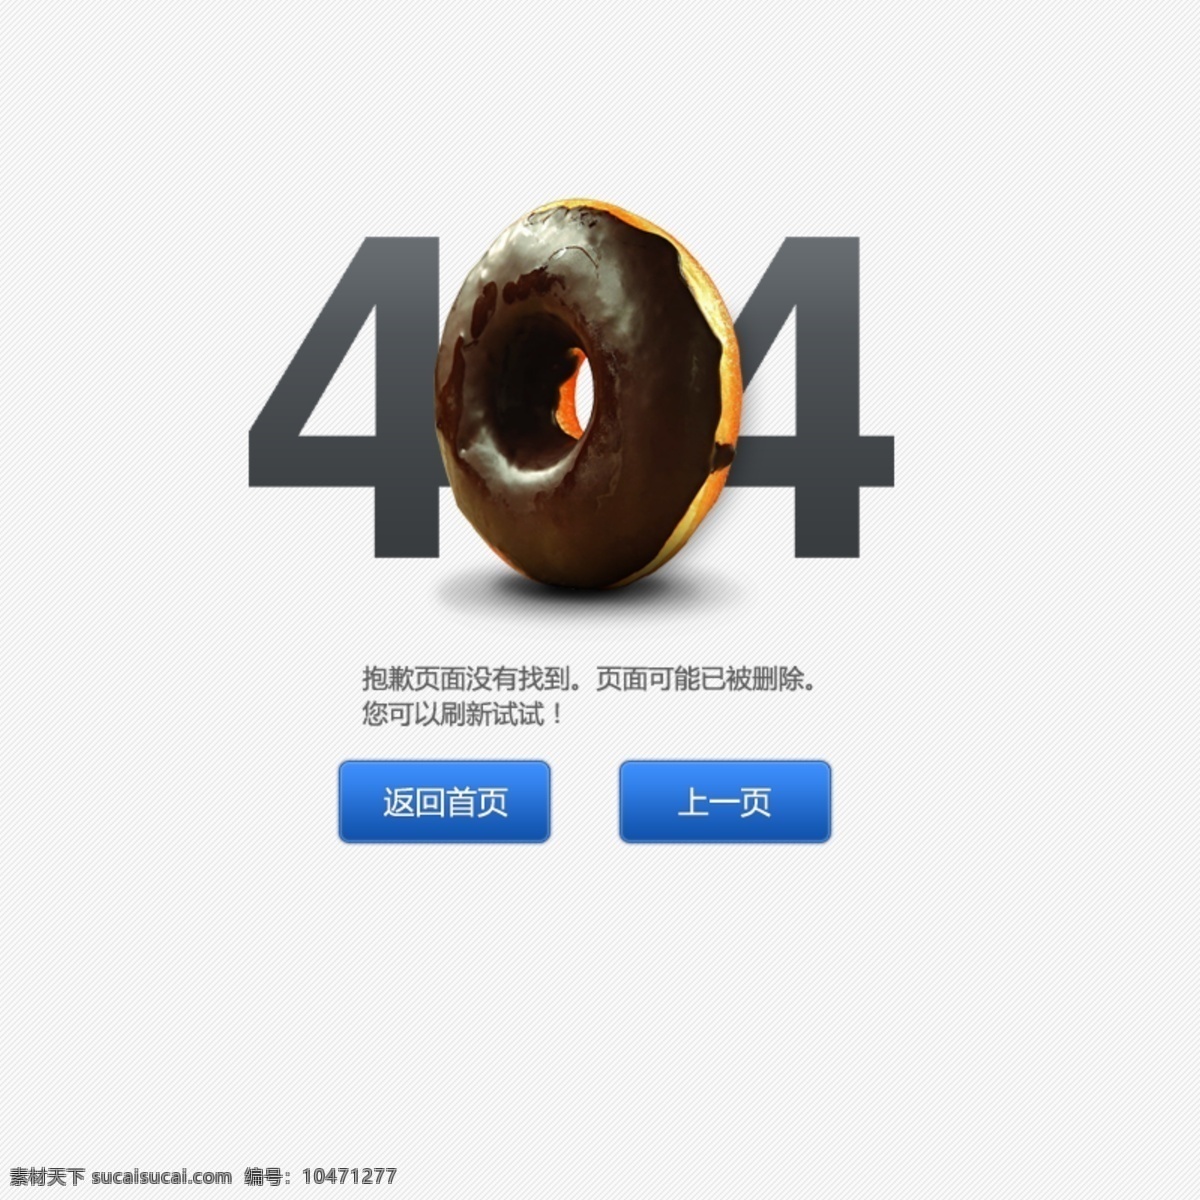 404页面 页面 错误页面 报错页面 网页模板 模板下载 中文模板 源文件